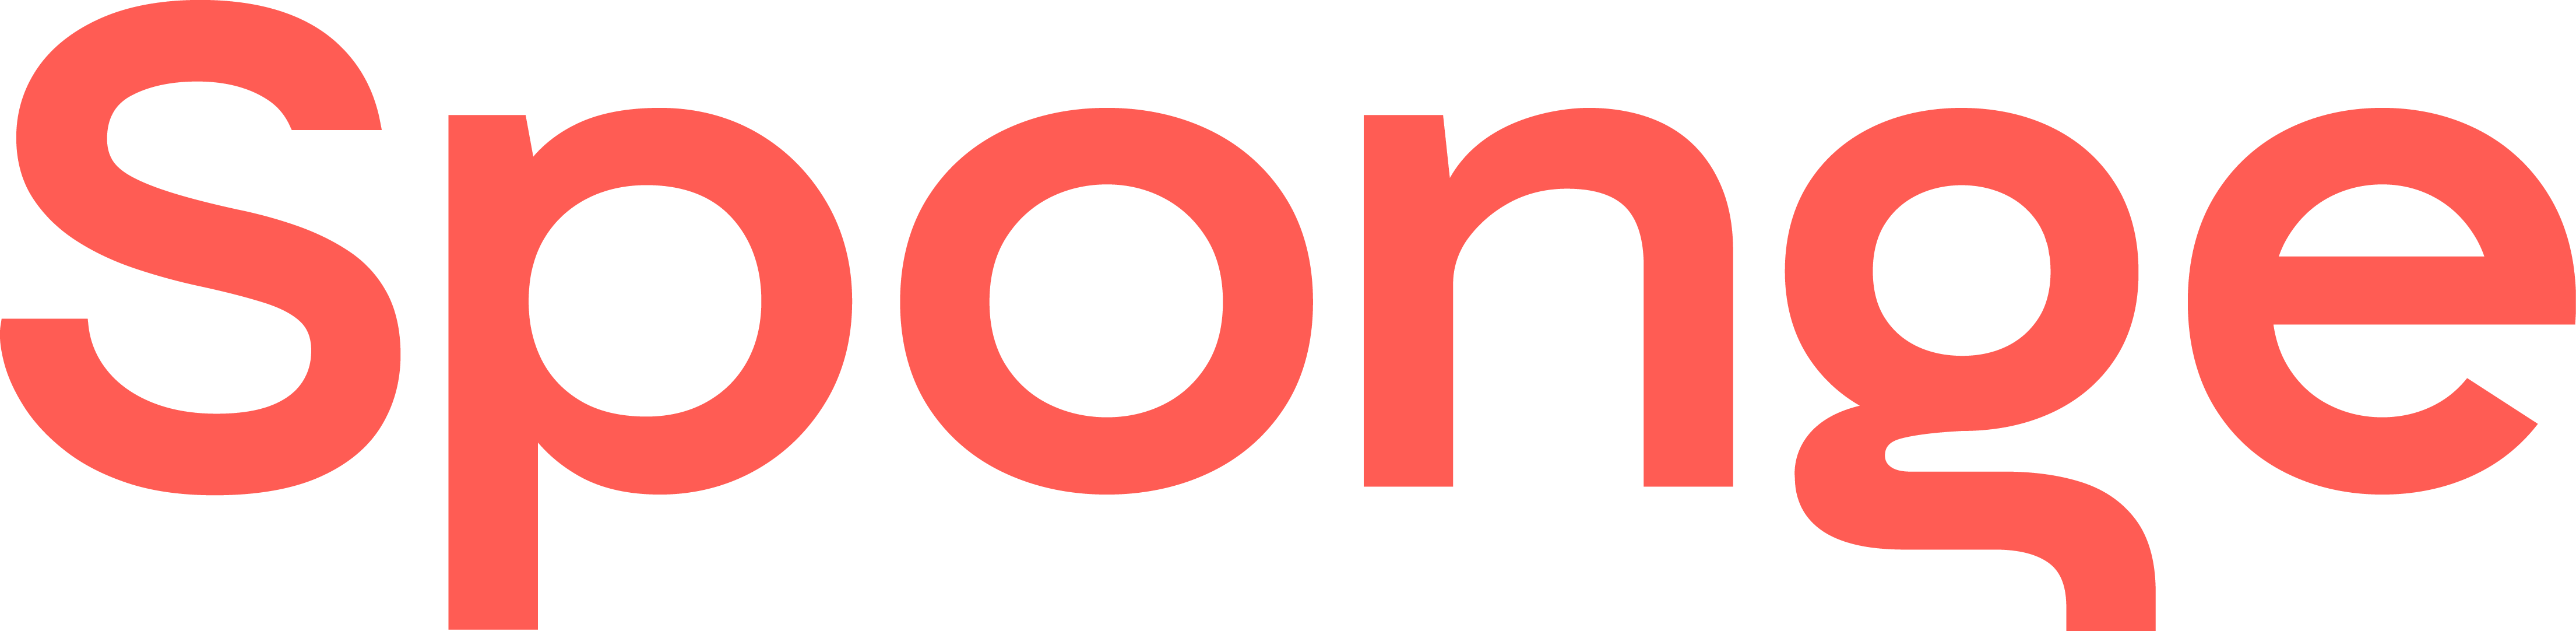 logo for Creative Sponge Ltd